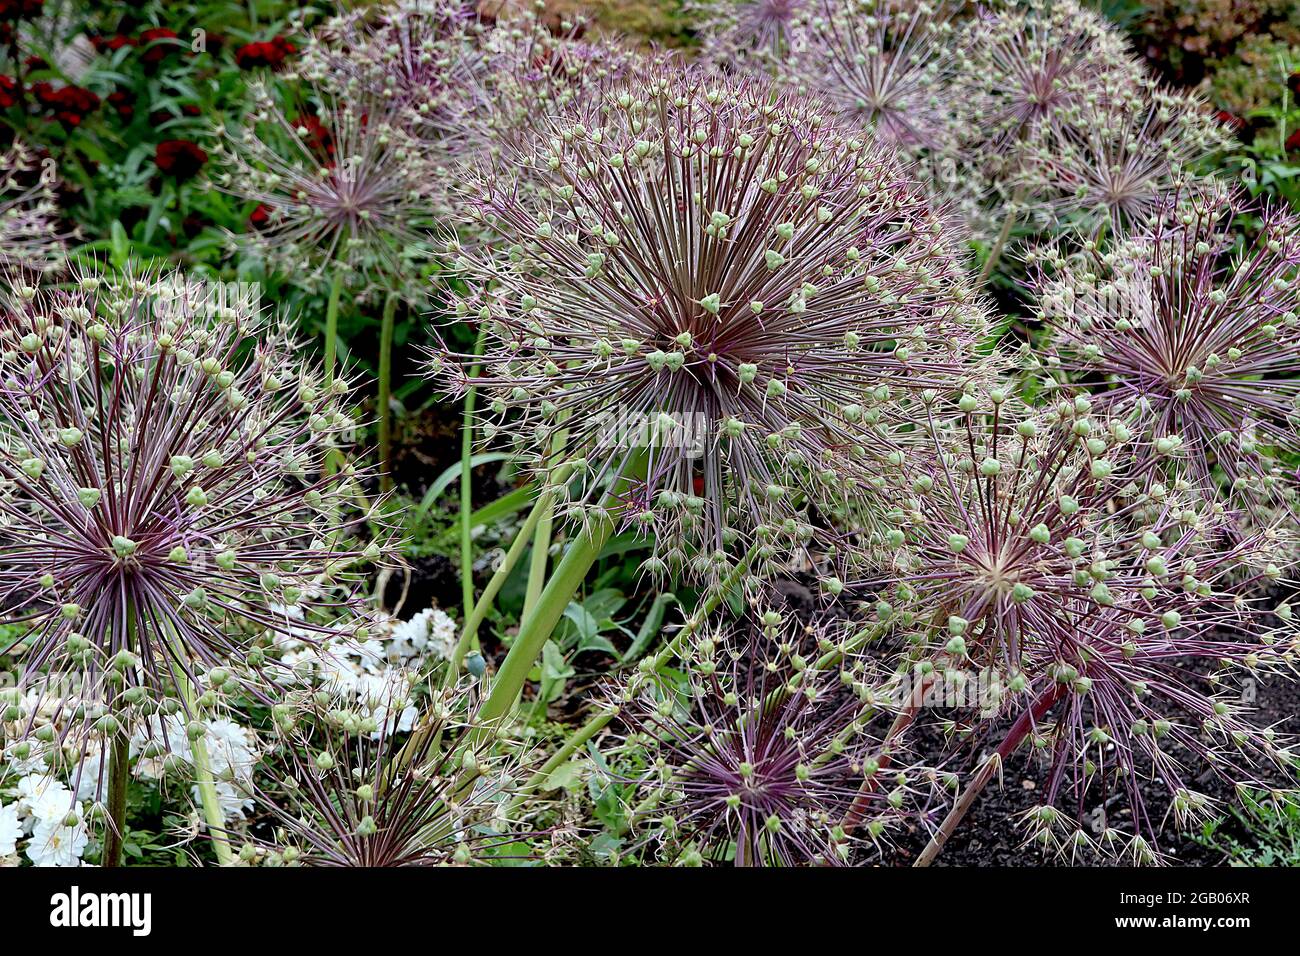 Allium x christophii ‘Purple Rain’ Allium Purple Rain - ombel sphérique de fleurs étroites en forme d'étoile pourpre sur tige haute, juin, Angleterre, Royaume-Uni Banque D'Images